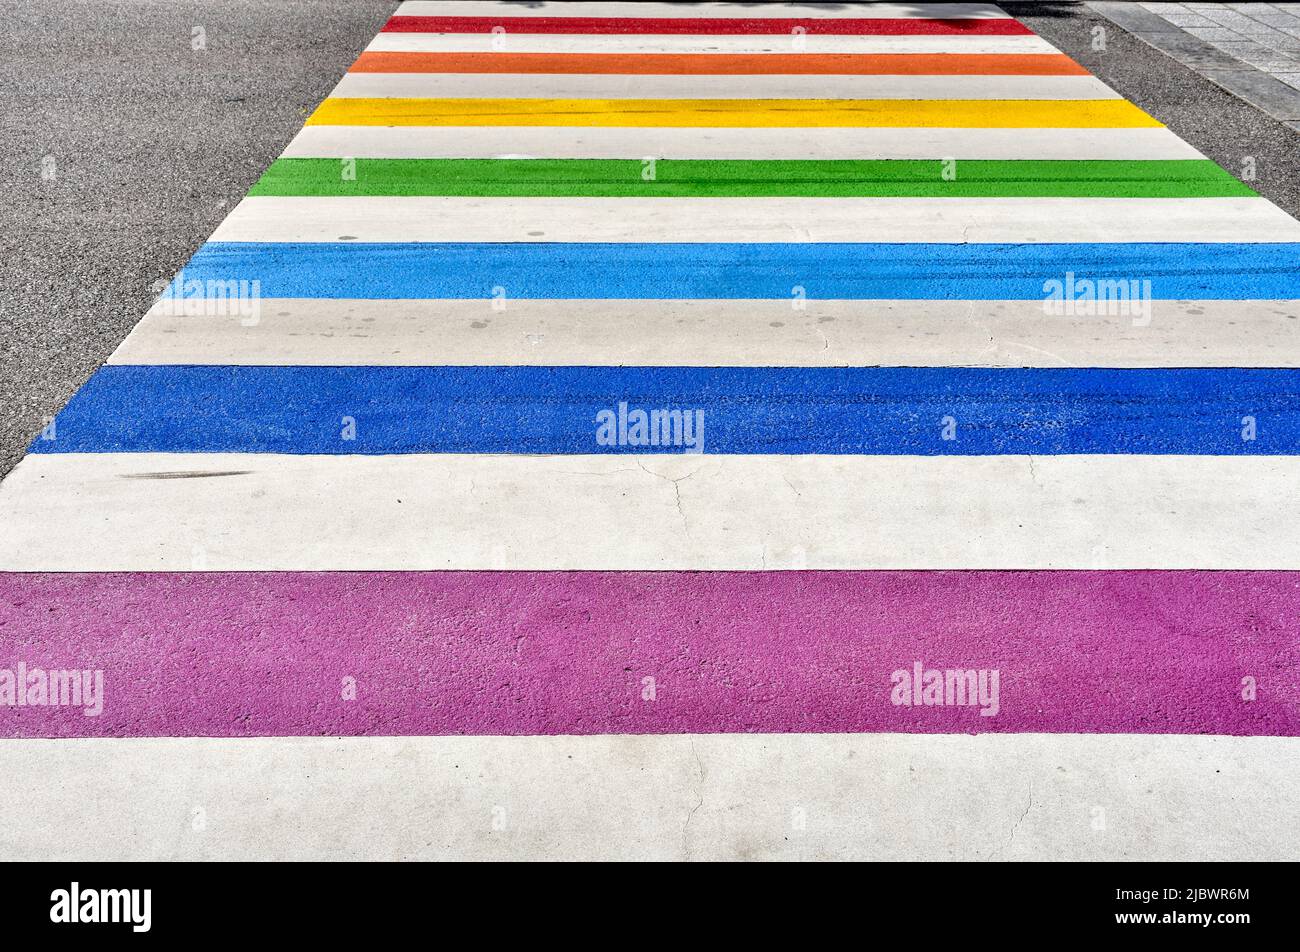 Zebrastreifen, bunt, Streifen, Farbe, Regenbogen, Regenbogenfarben, Schutzweg, farbenfroh, LGBTIQ, Lesbisch, Schwul, Bisexuell, Transsexuell, Intersex Stock Photo